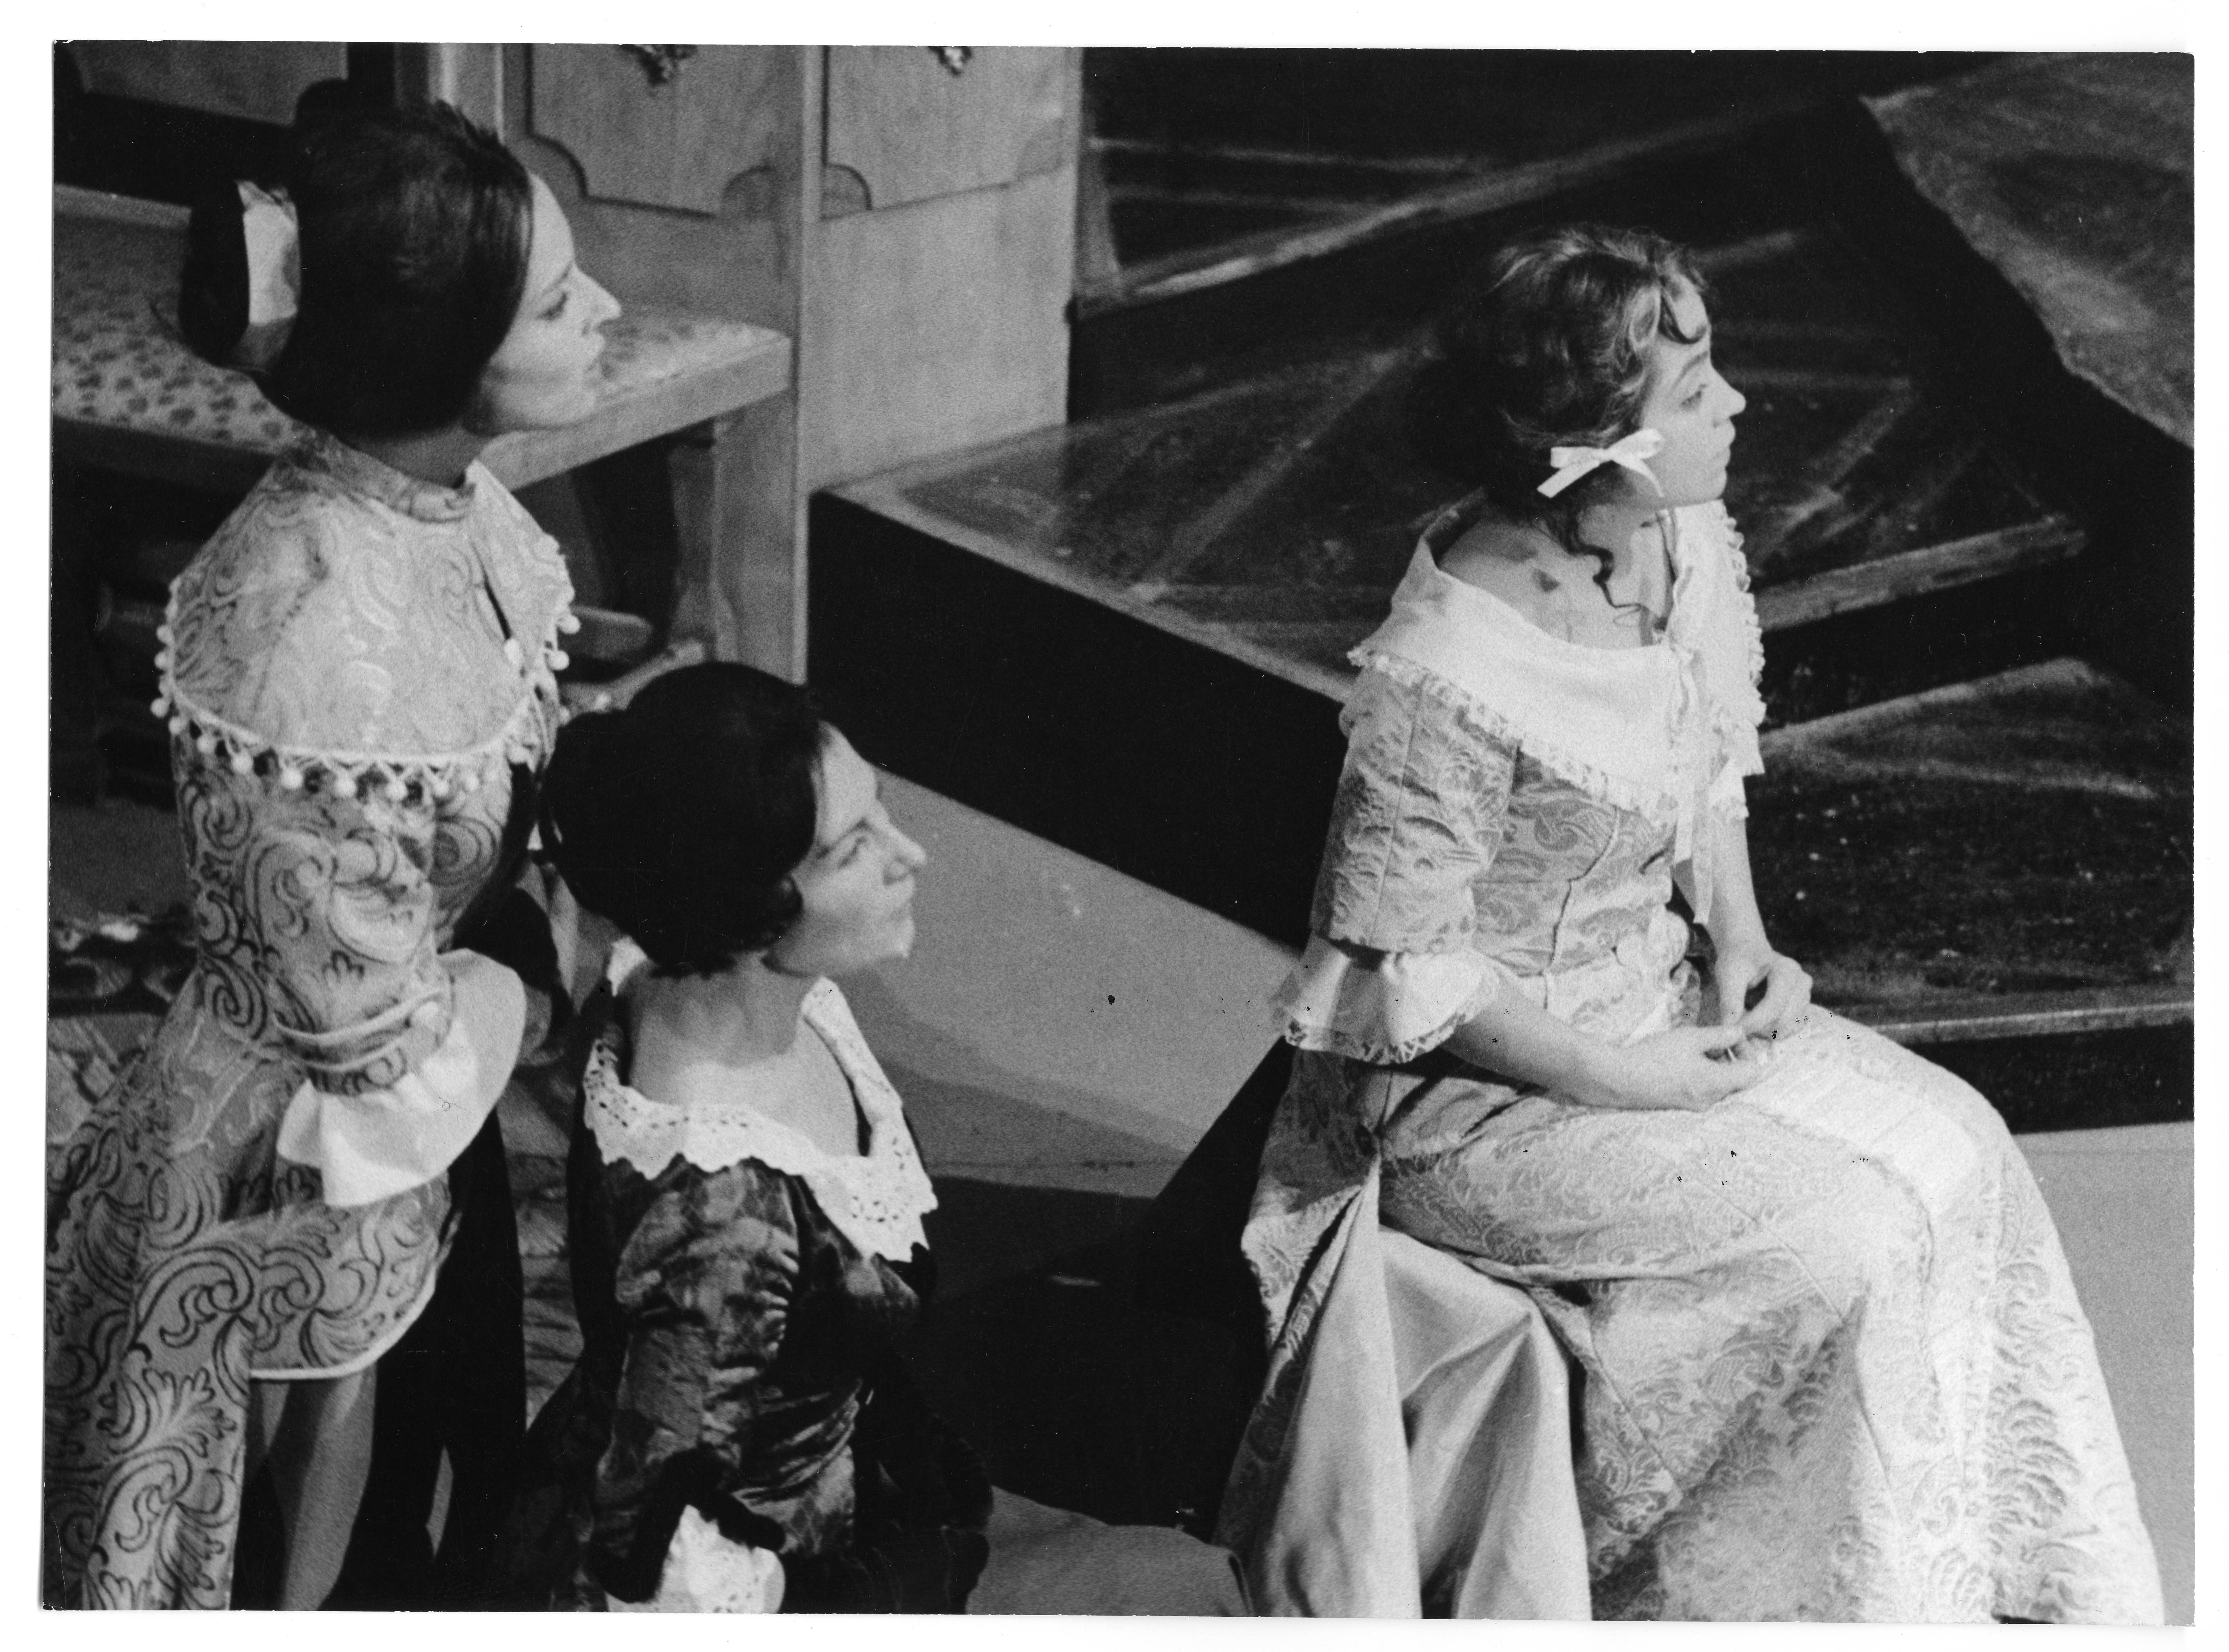 Les femmes savantes de Molière - Mise en scène André Steiger - 1964-1965